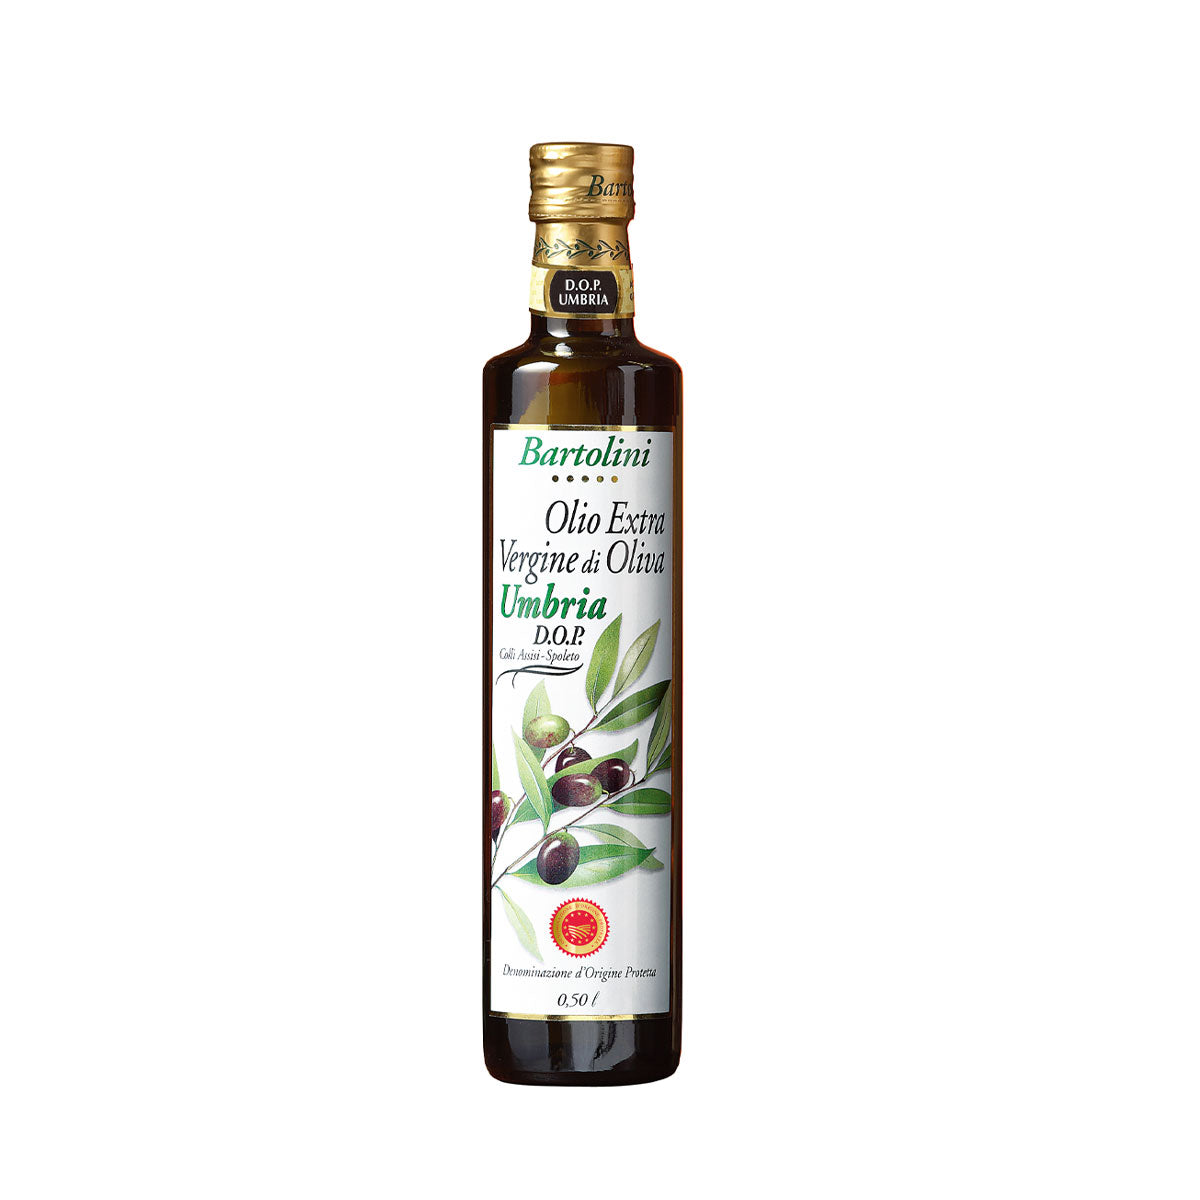 Bartolini Extra Virgin Olive Oil Umbria D.O.P., 16.9 oz | 500 ml